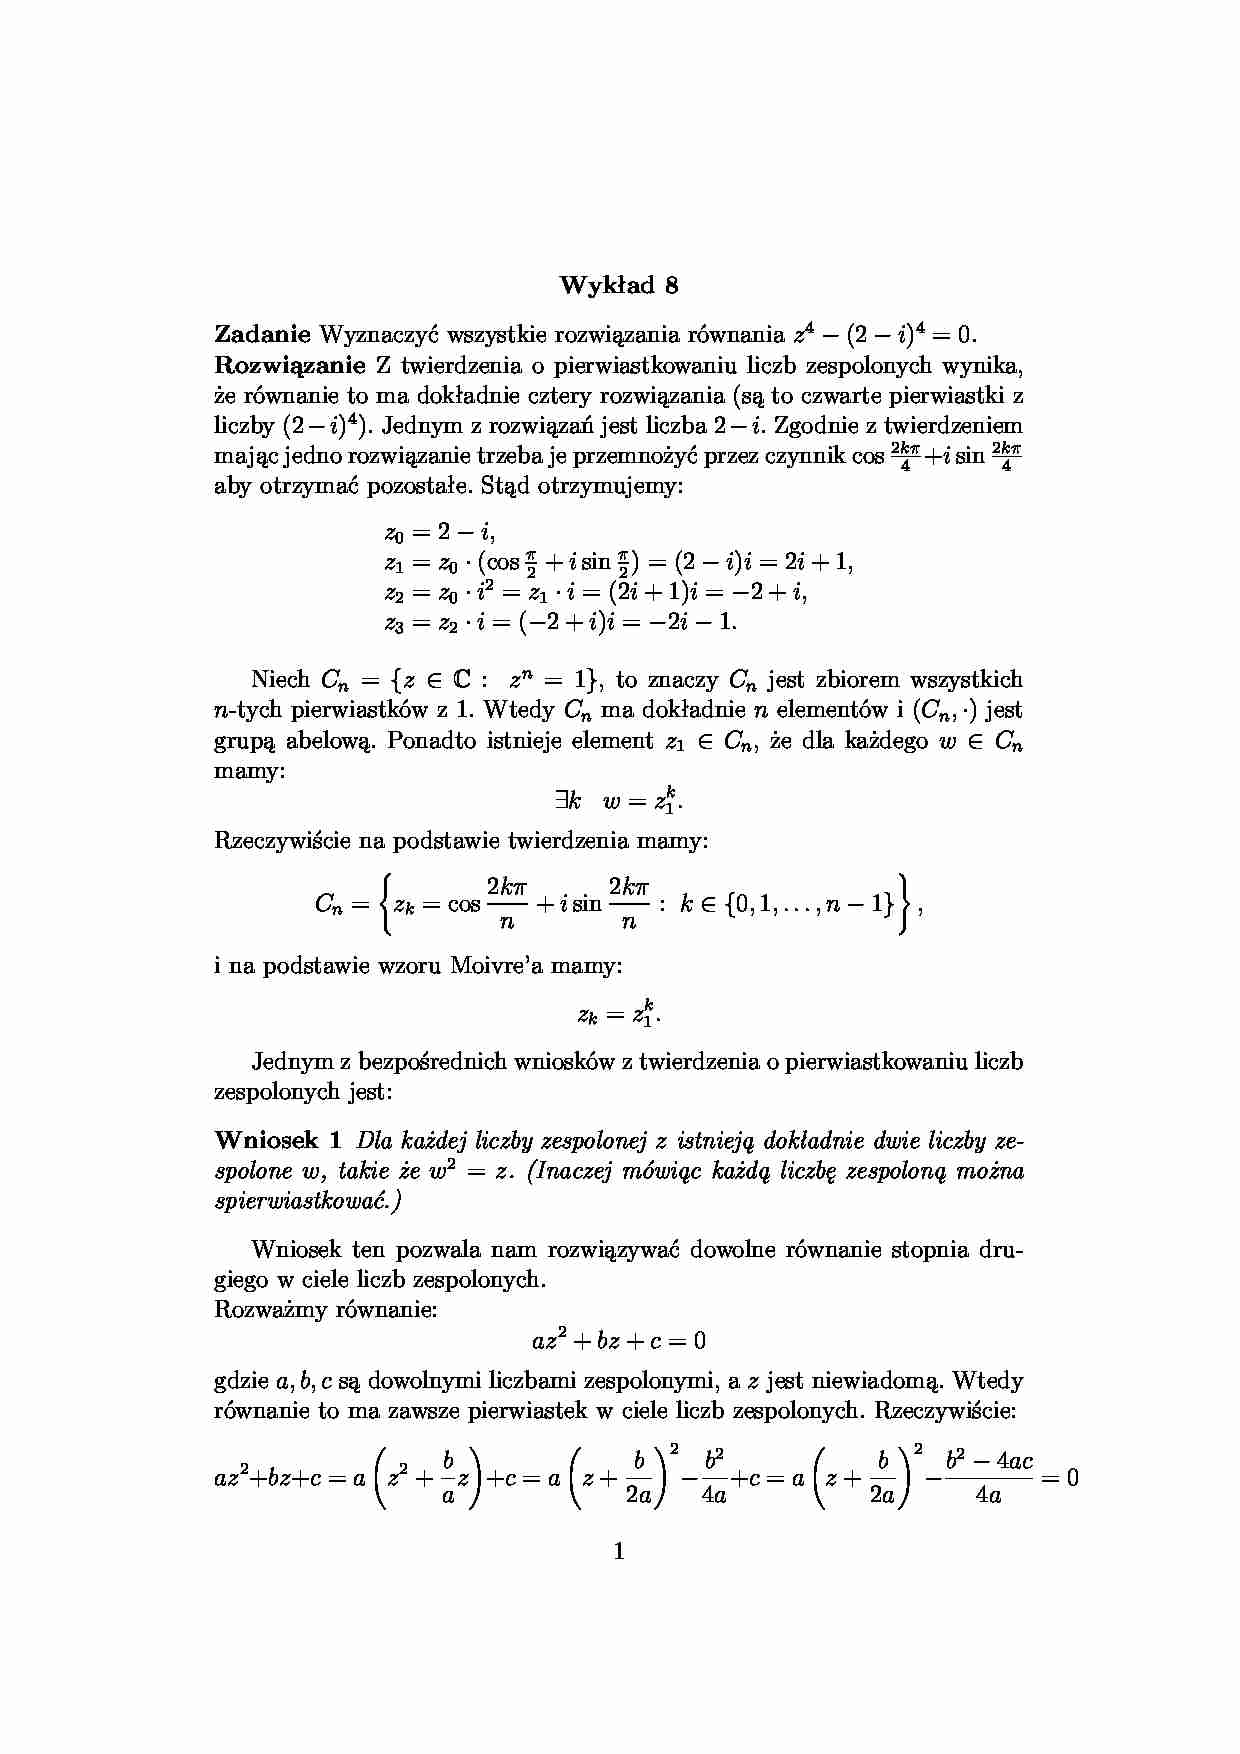 Wielomiany zespolone - algebra - strona 1